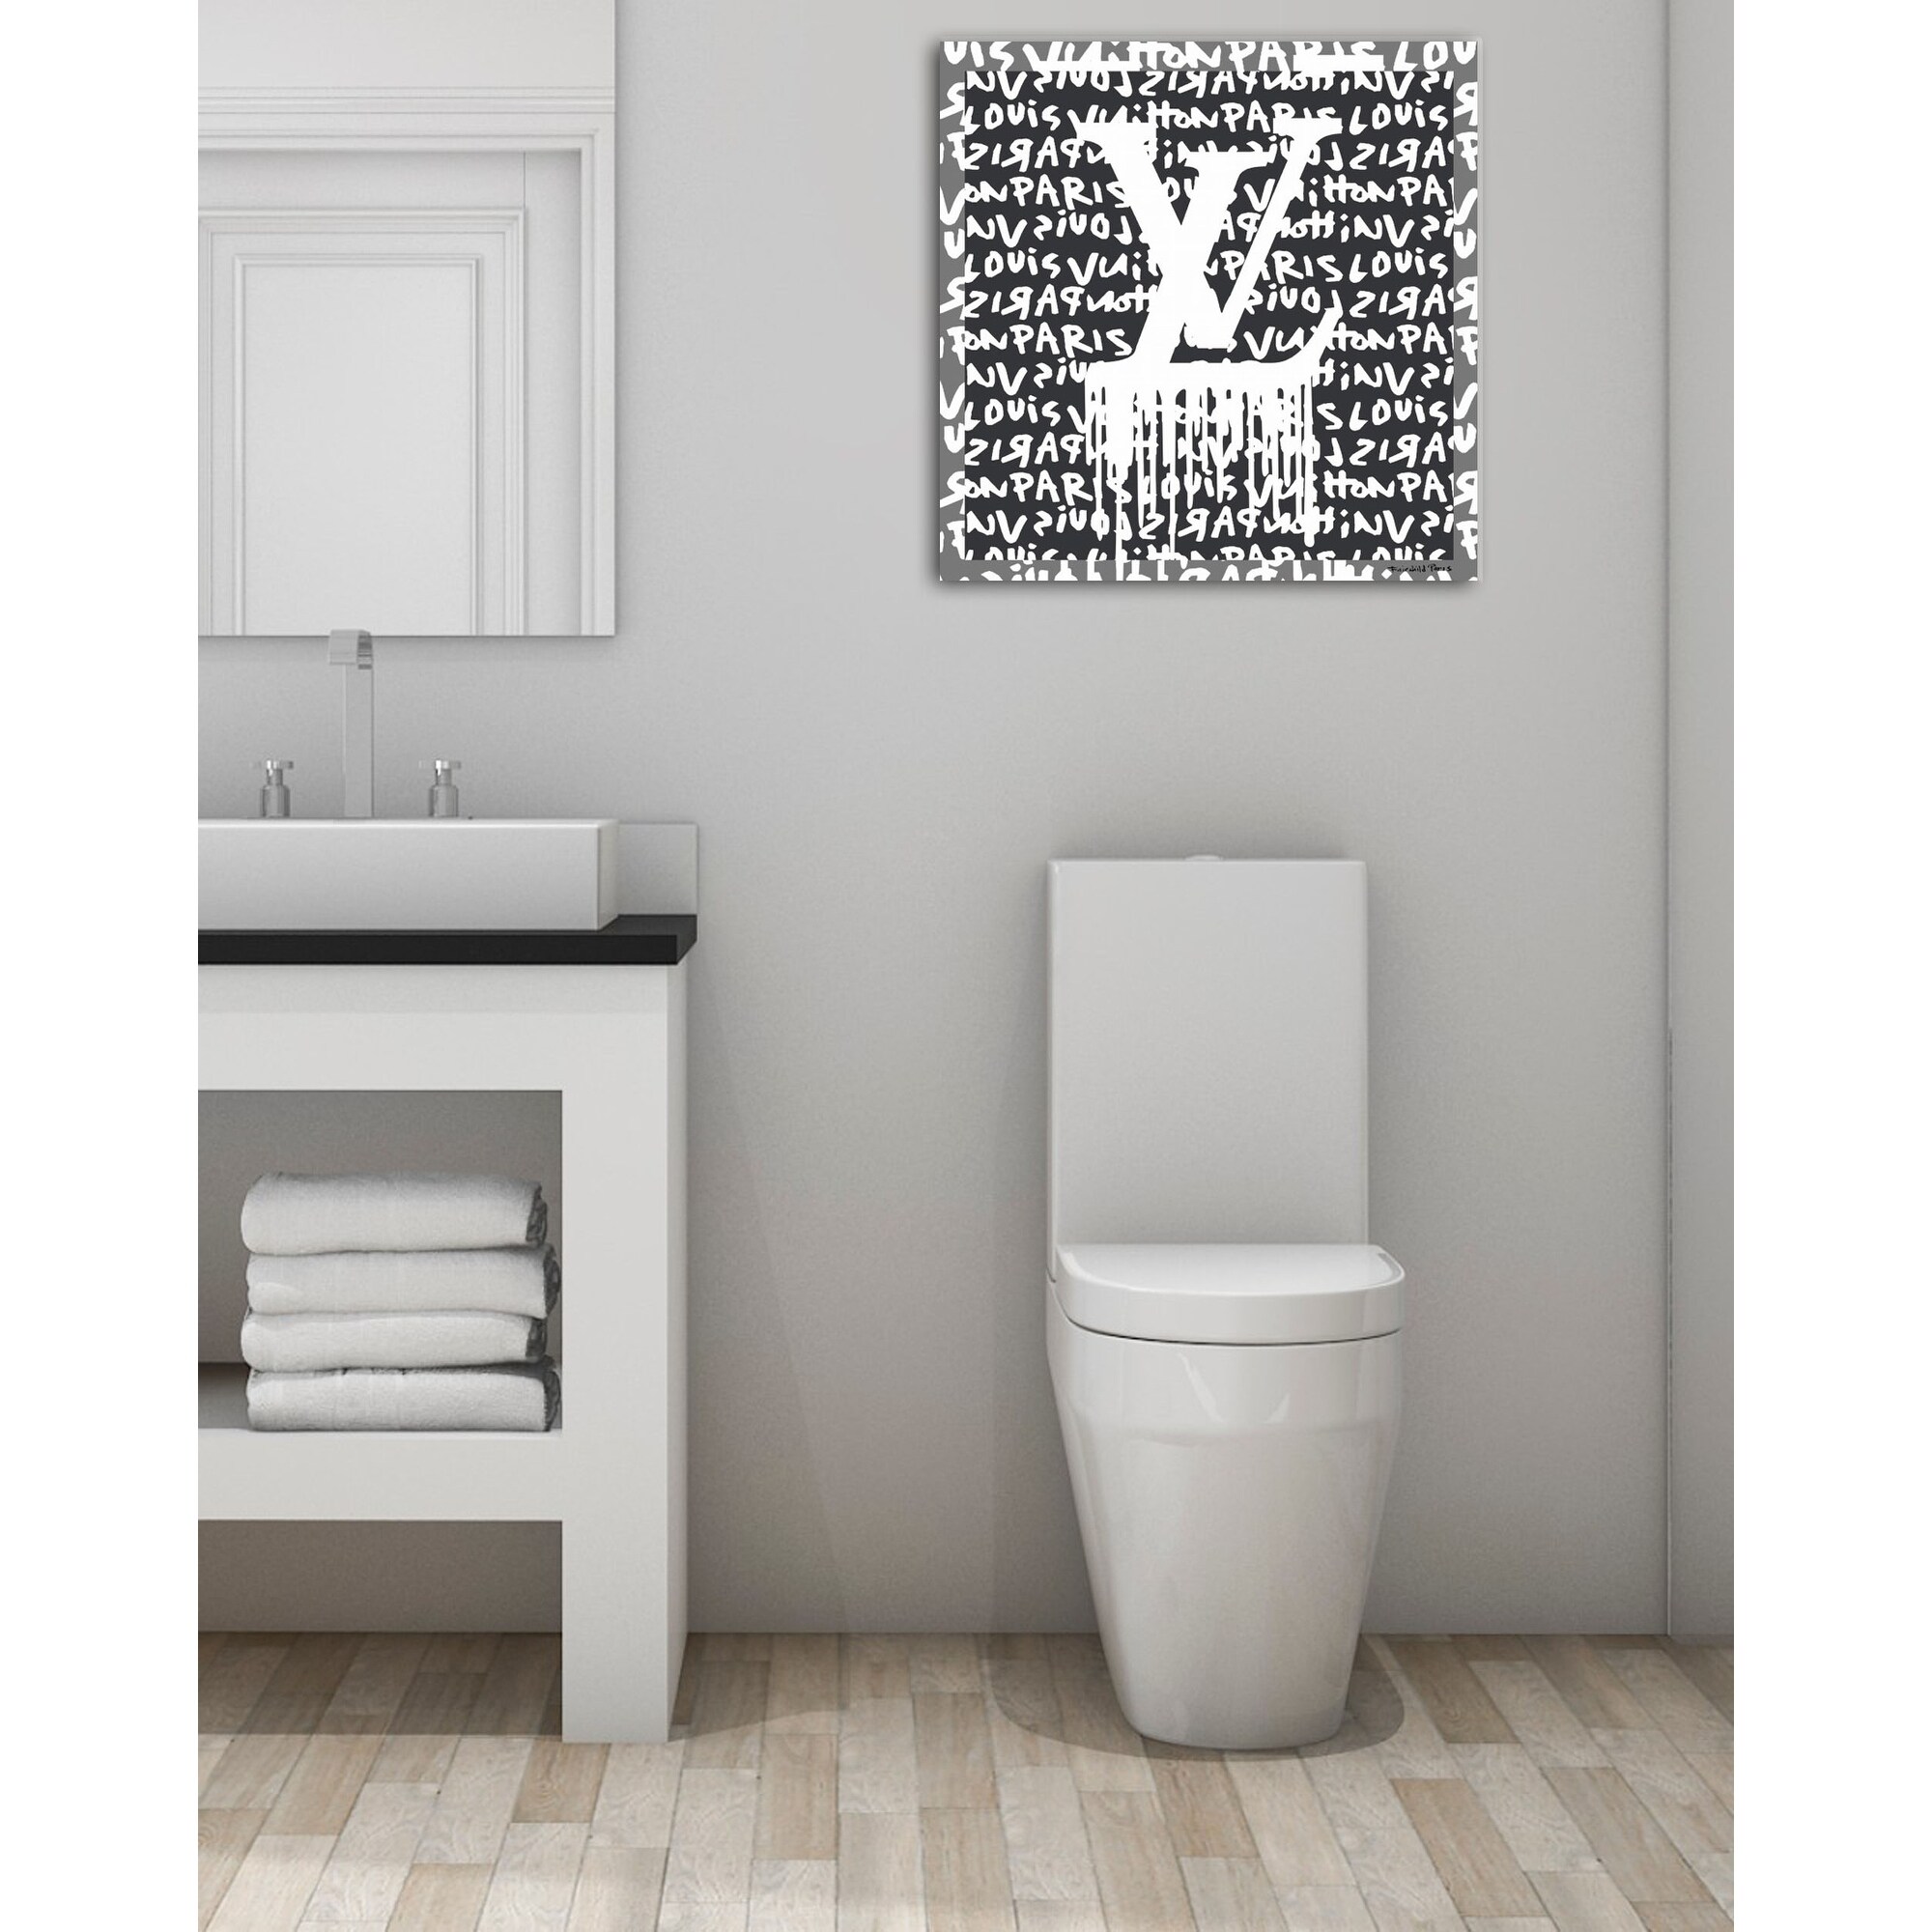 Fairchild Paris - Louis Vuitton Logo Drip - Canvas Wall Art 30 x 30 - Bed  Bath & Beyond - 32627860